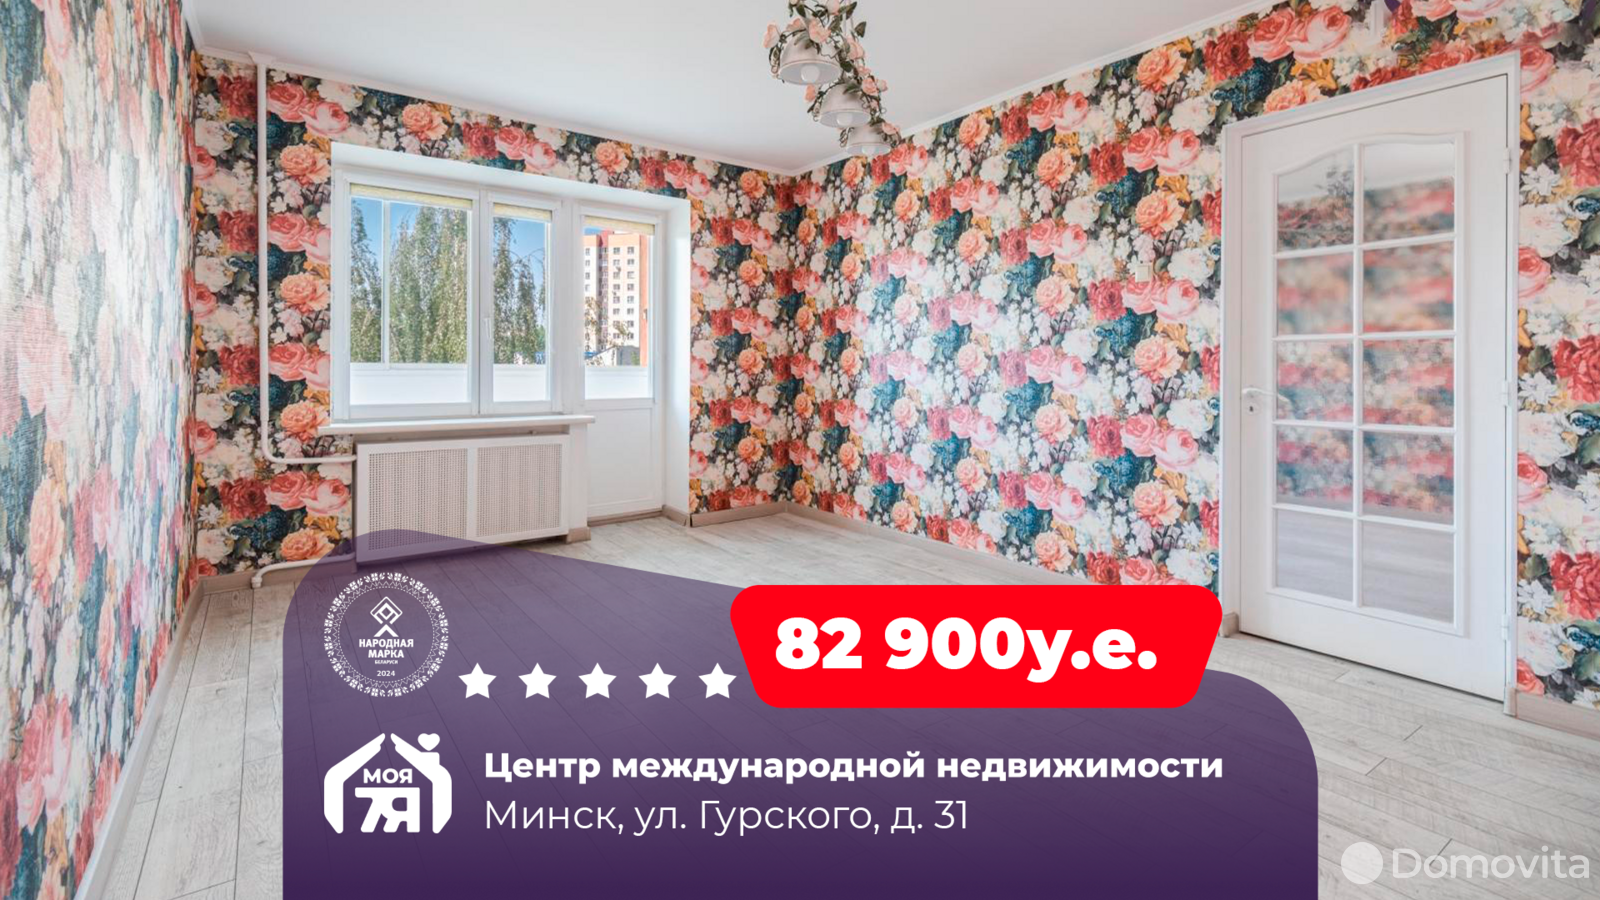 Стоимость продажи квартиры, Минск, ул. Гурского, д. 31